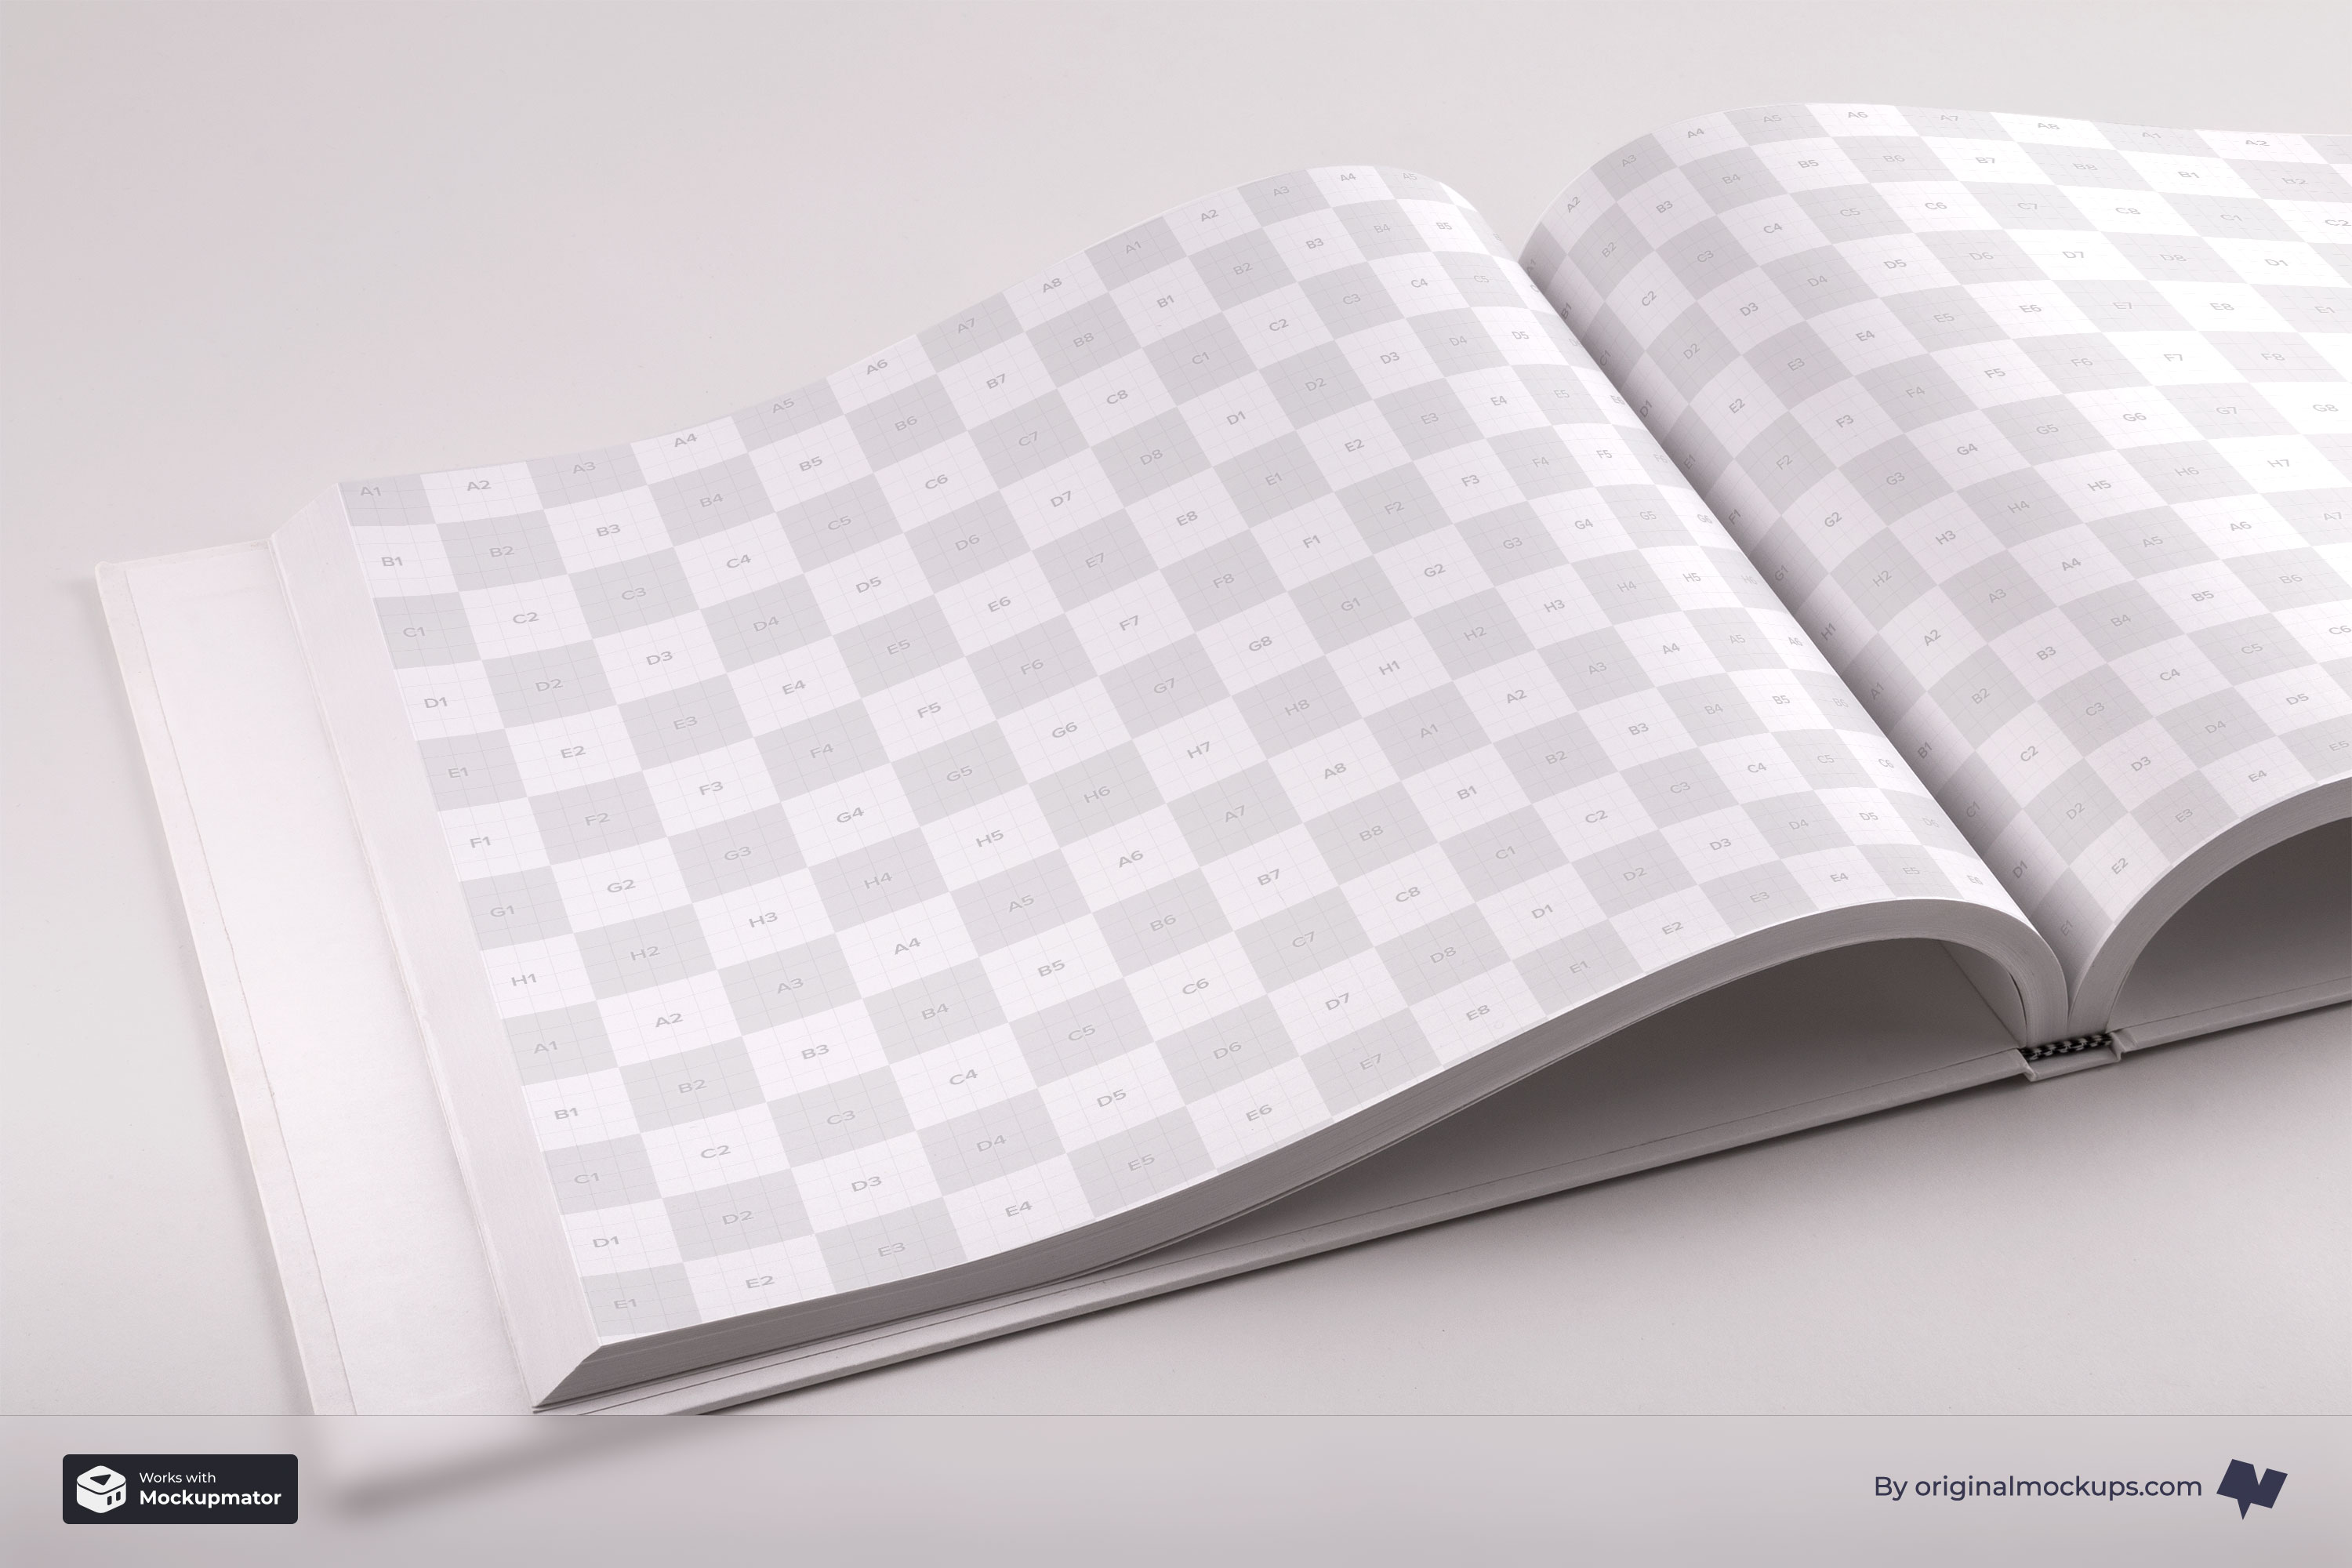 精装图书内页设计PSD样机模板01 Hardcover Large Landscape Book PSD Mockup 01插图(1)